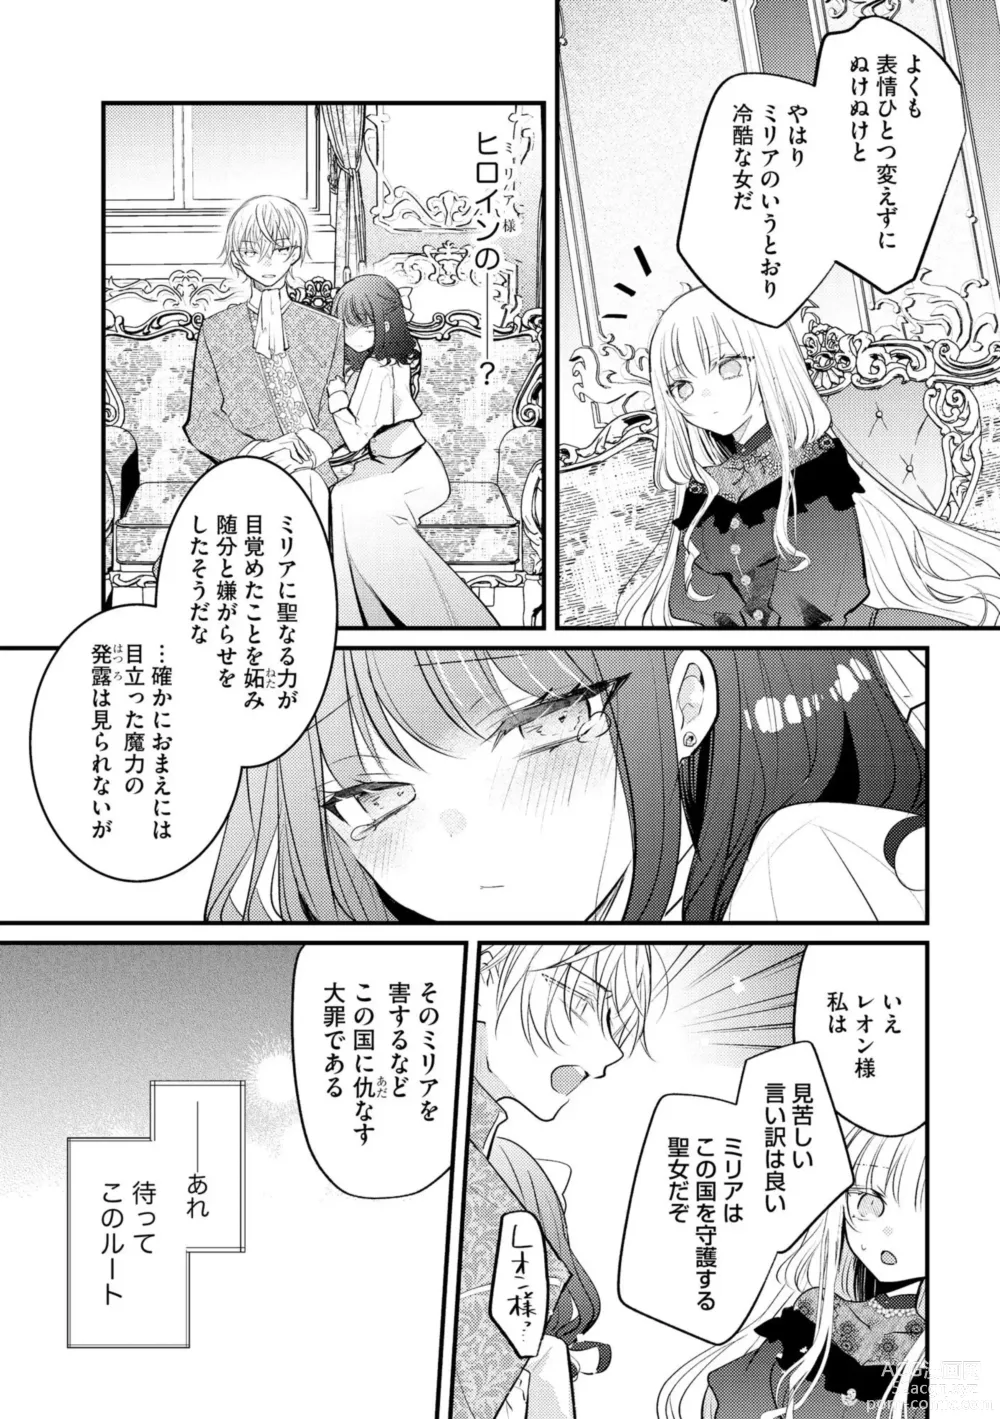 Page 9 of manga Akuyaku Reijou to Kyuuketsu Ouji no Dekiai Keiyaku Bad End ￫ Kenzoku Route no Amai Yotogi 1